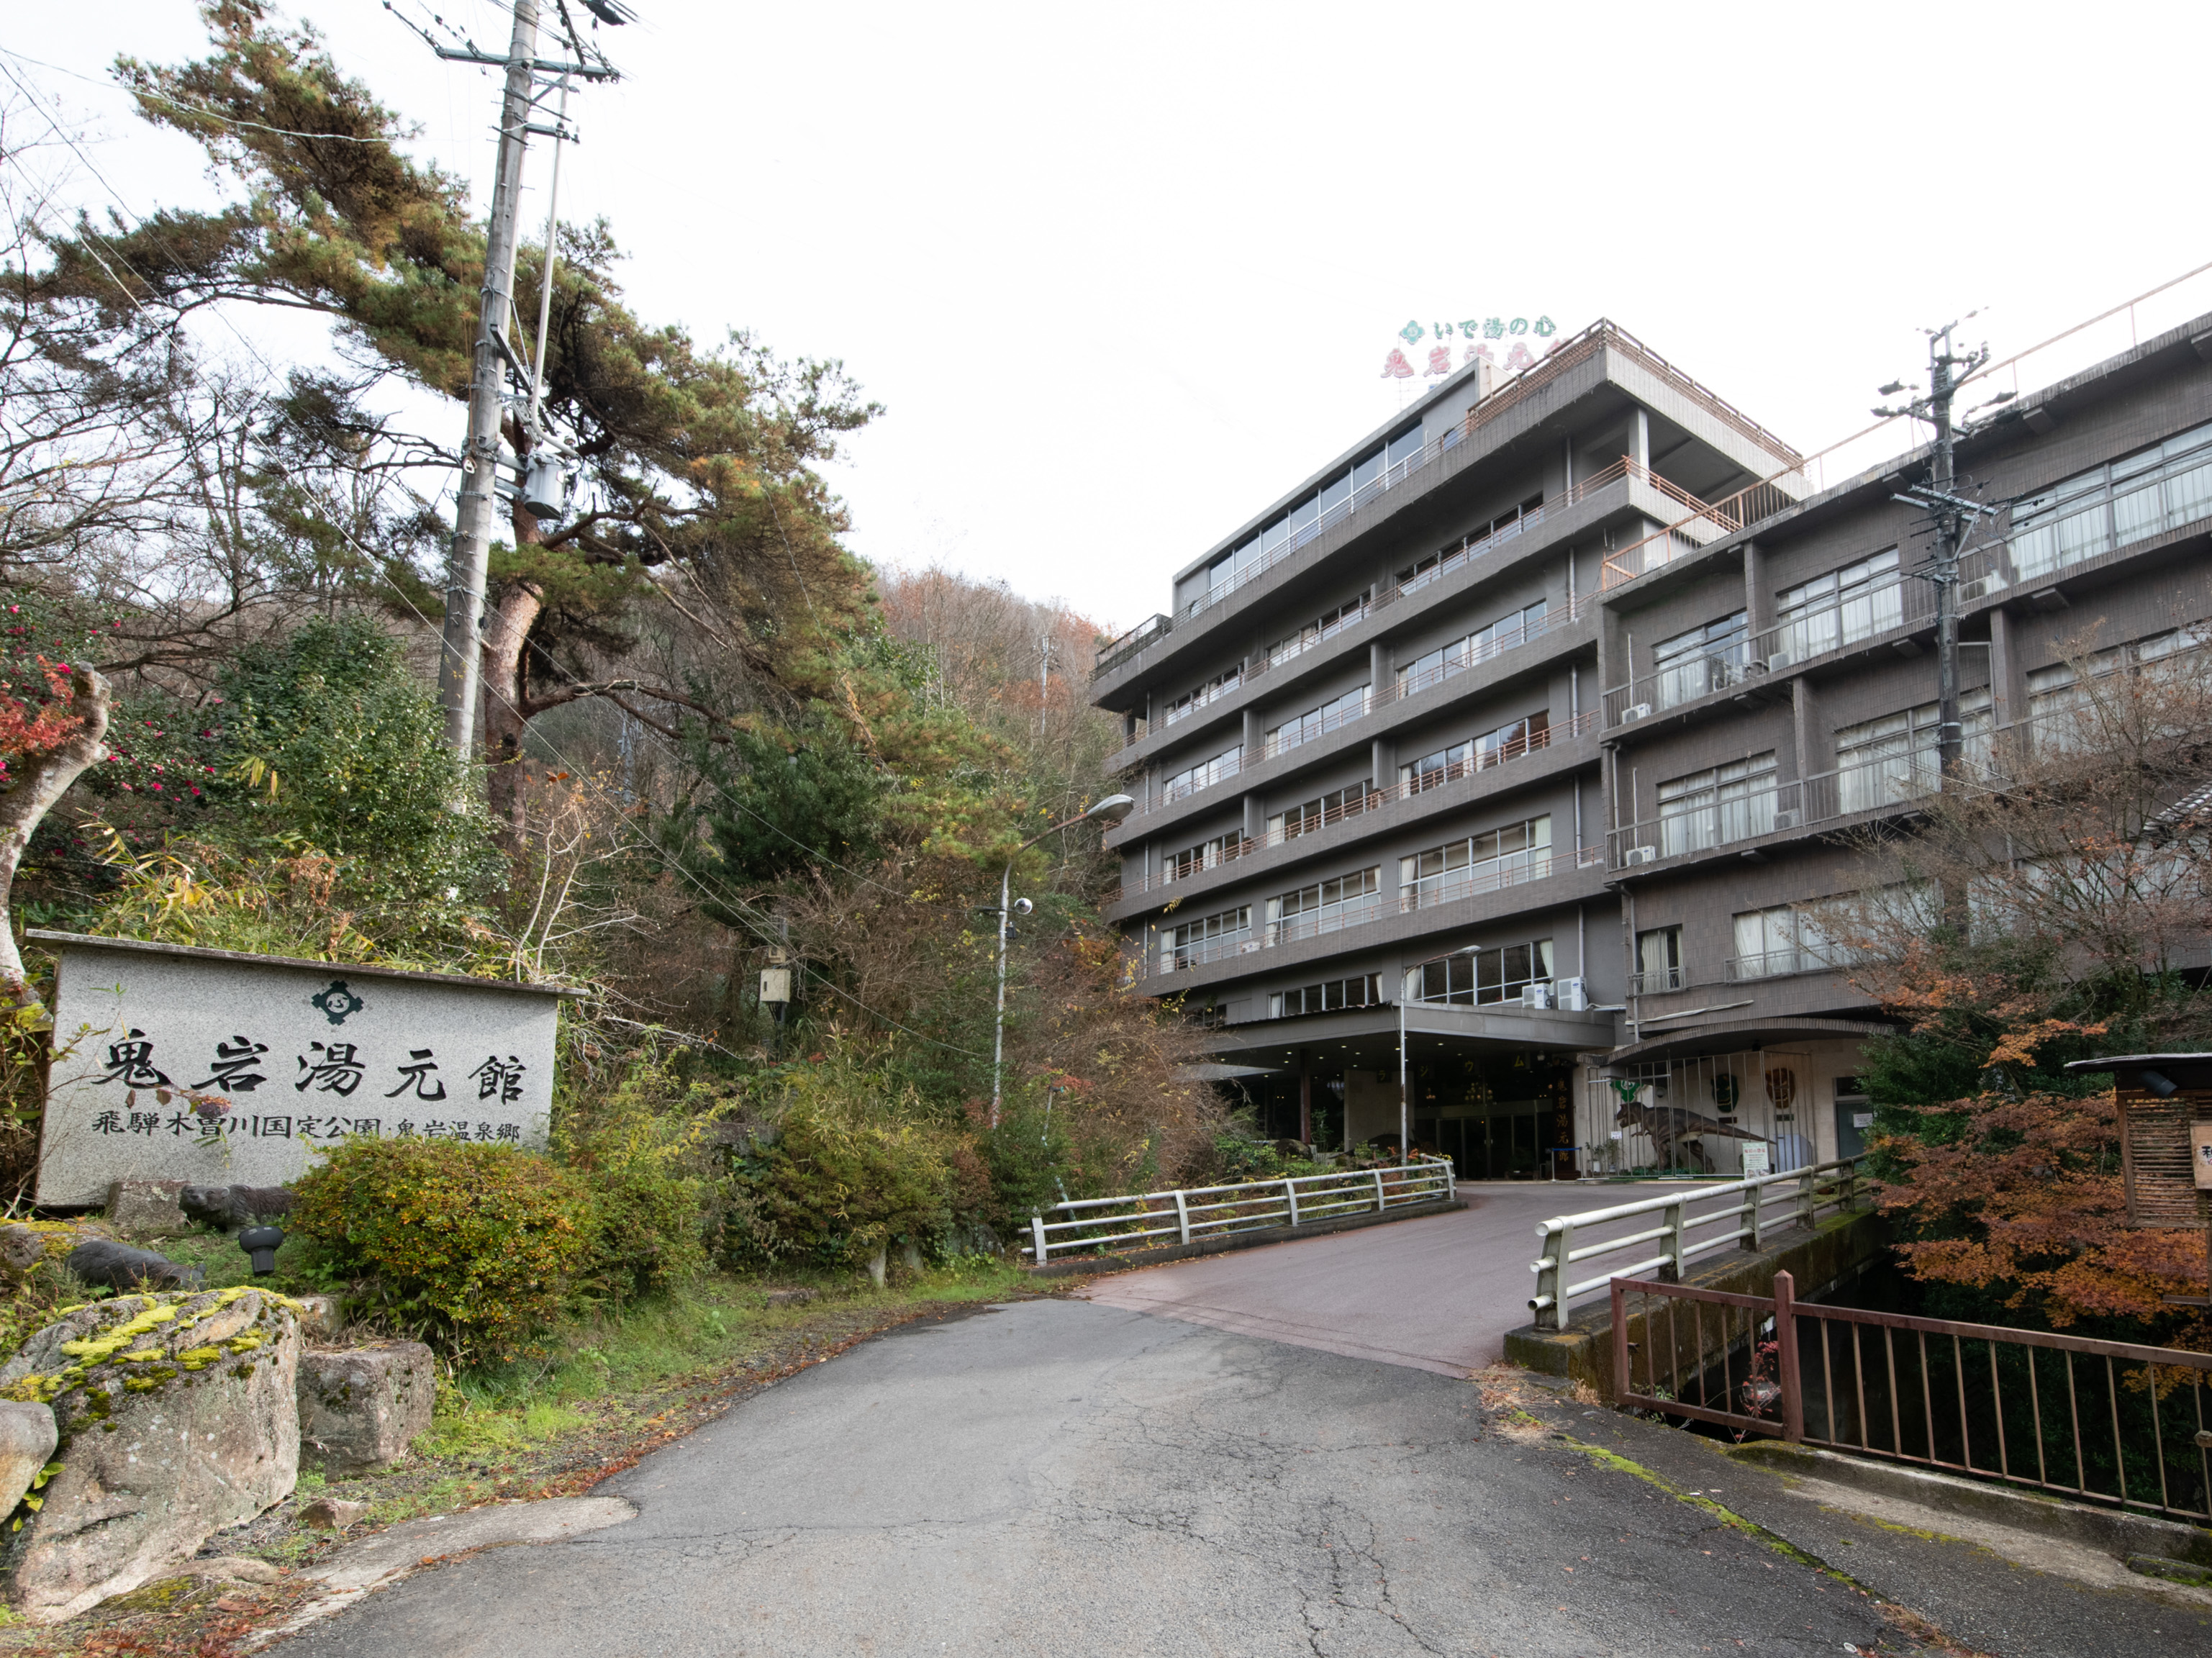 岐阜県の「織部ヒルズ」からのアクセスが良い、おすすめ温泉宿を教えてください